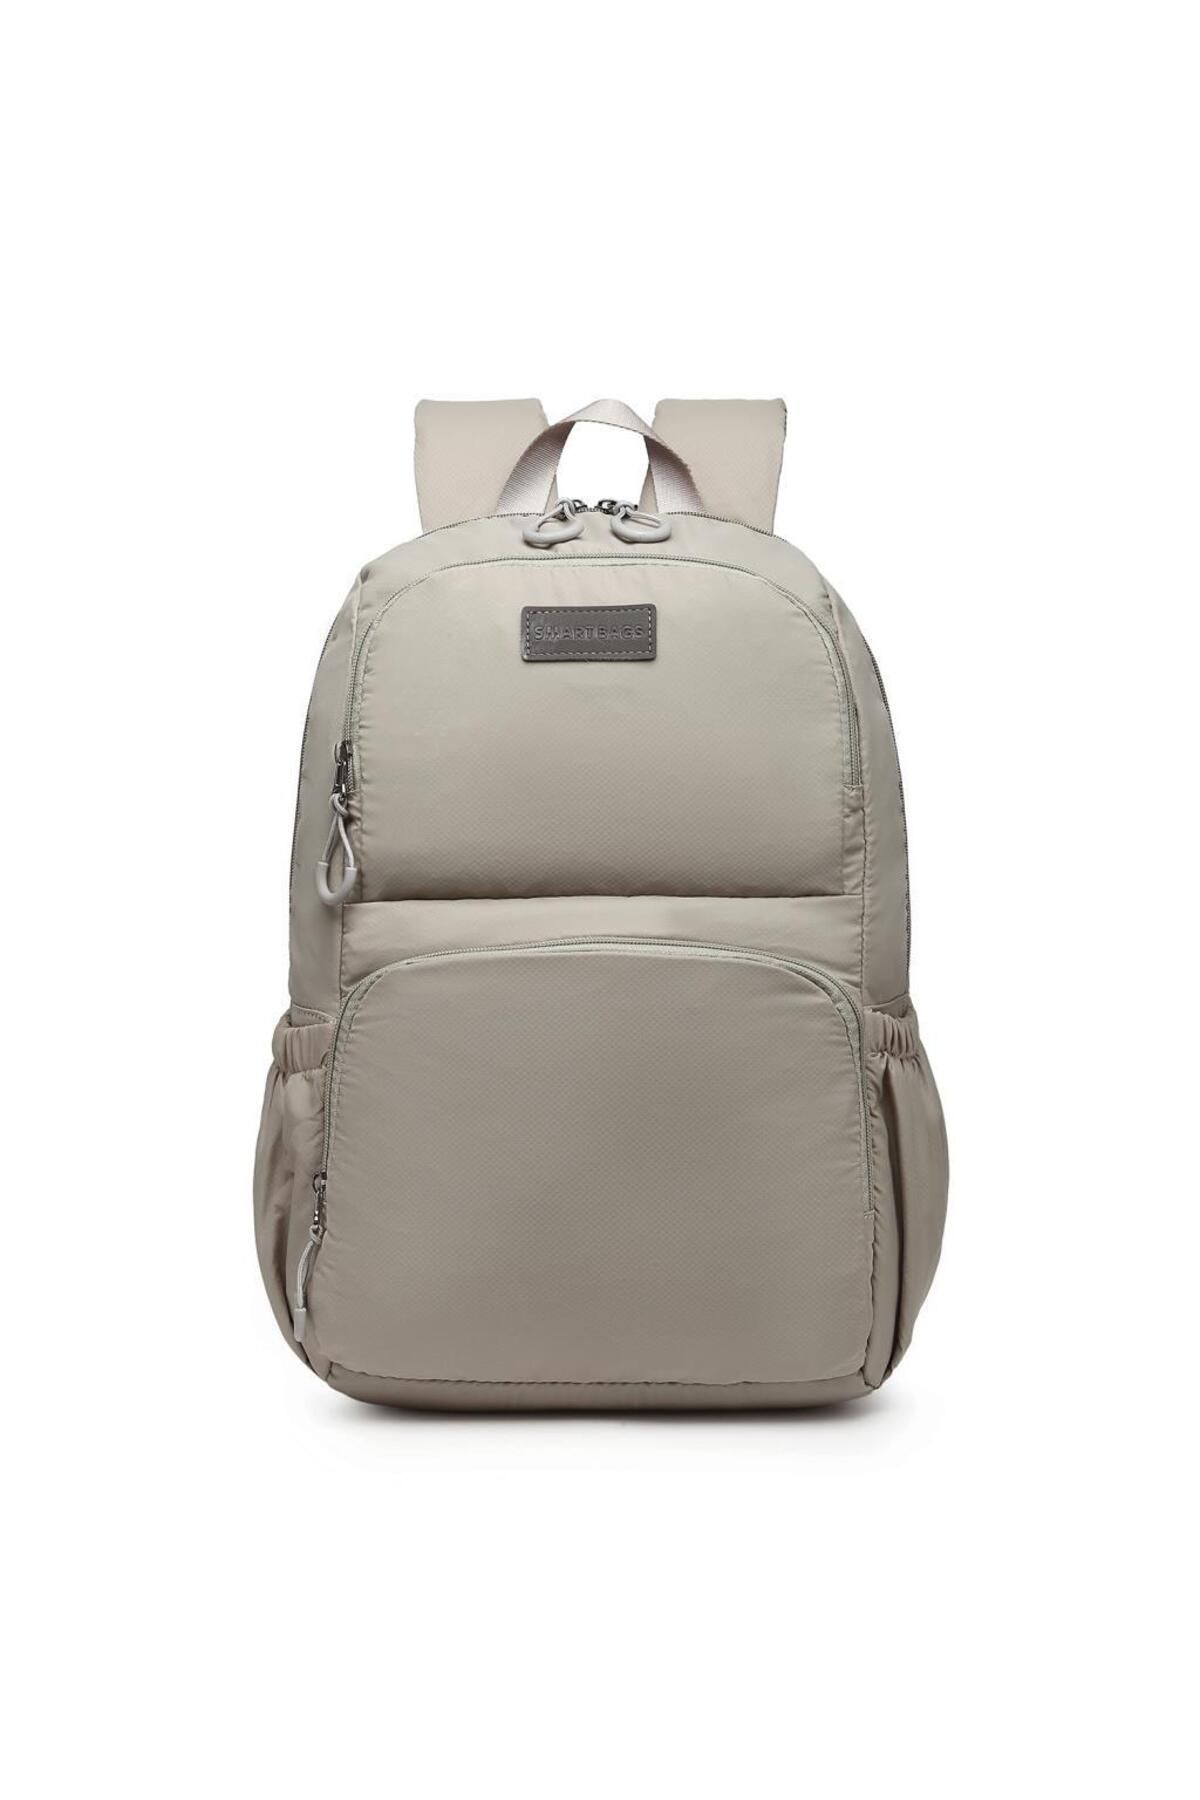 Smart Bags Büyük Boy Ekstra Hafif Uniseks Sırt Çantası 3212